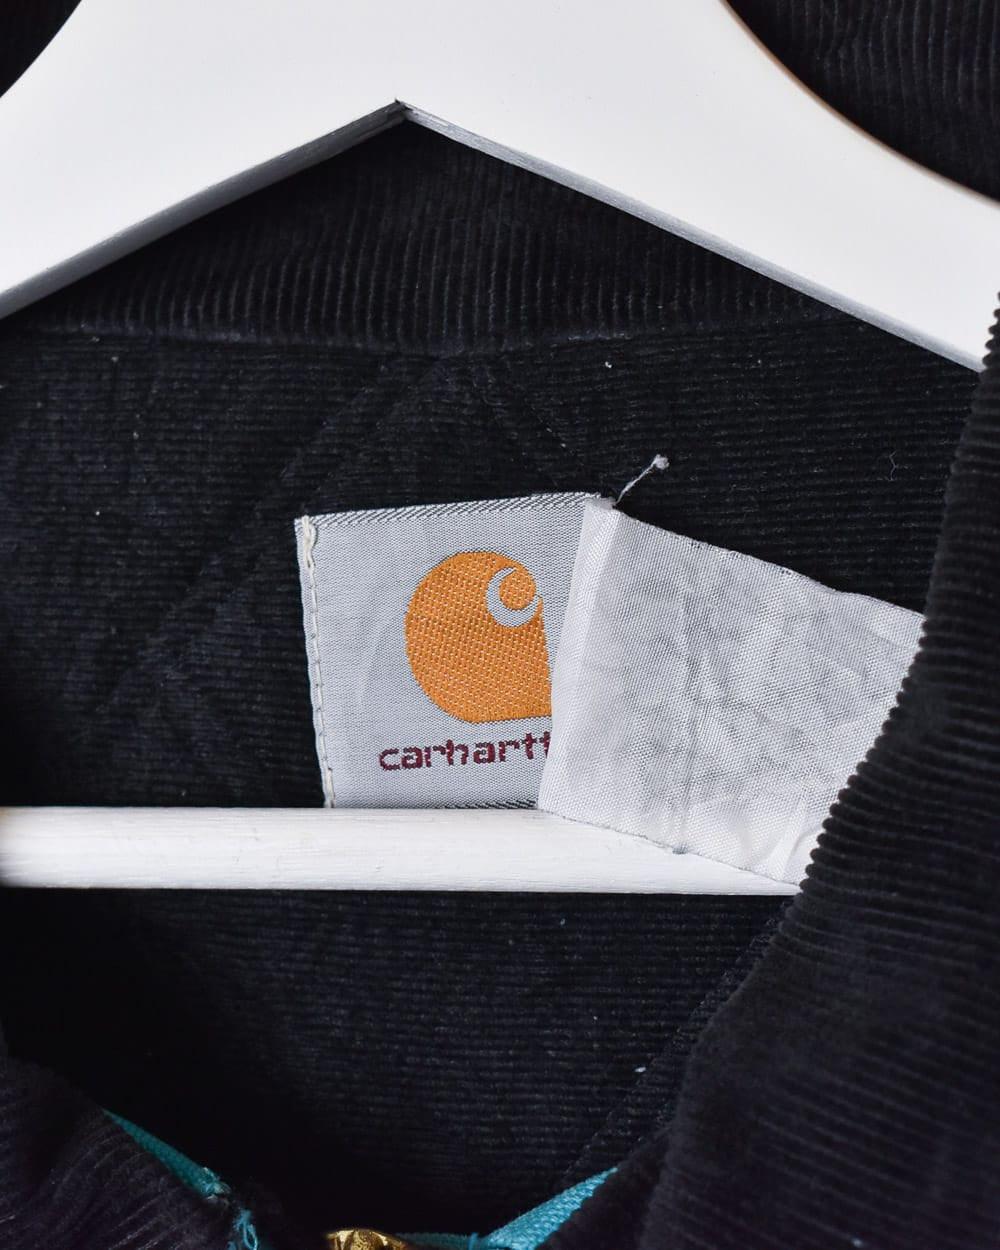 BabyBlue Carhartt Patterned Workwear Detroit Jacket - X-Large